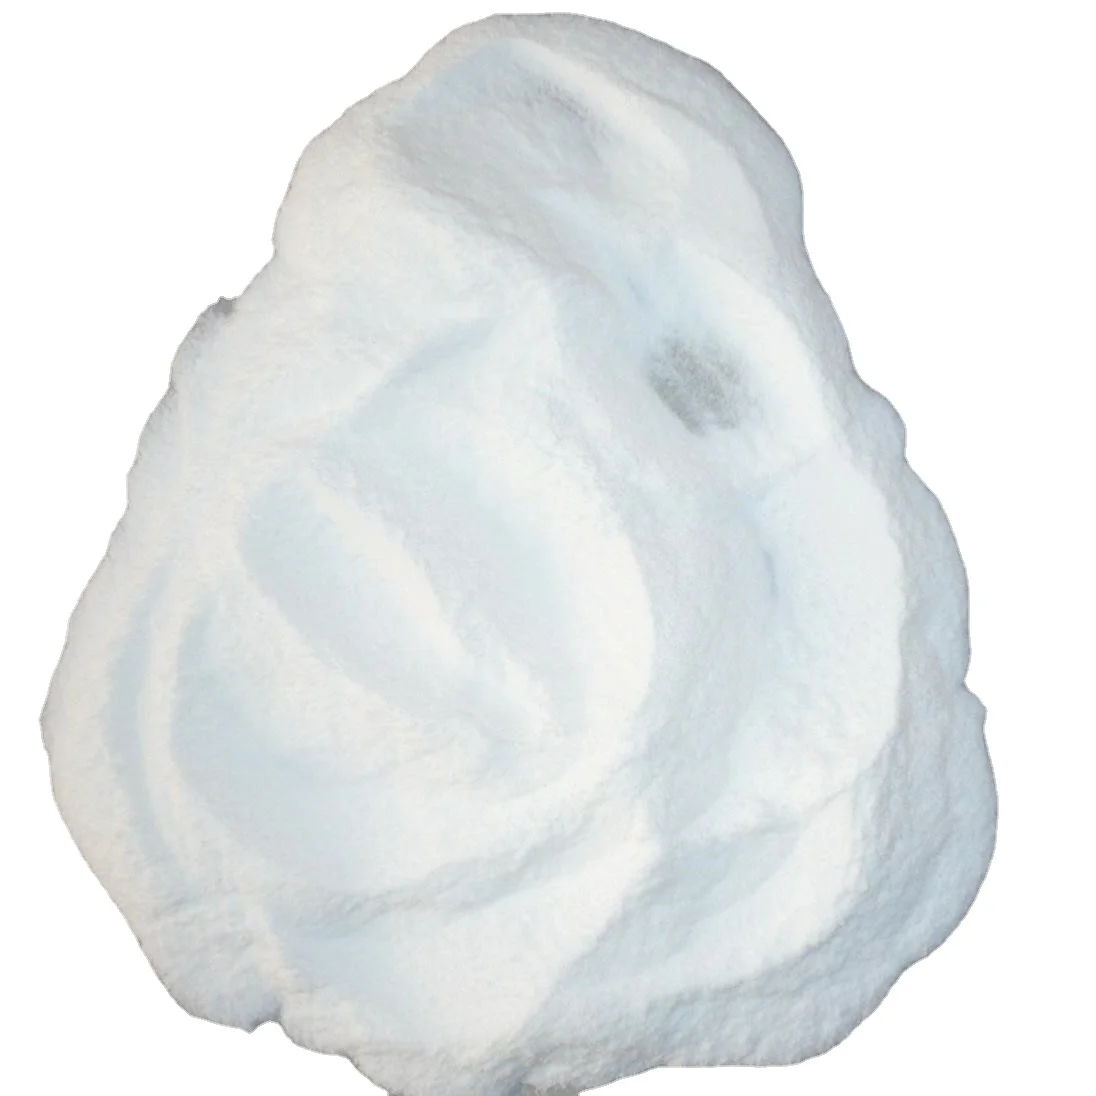 White Powder 99.5%Min Polivinyl Alcohol/PVA (CAS: 9002 89 5) for Agriculture Grade (1600449282184)